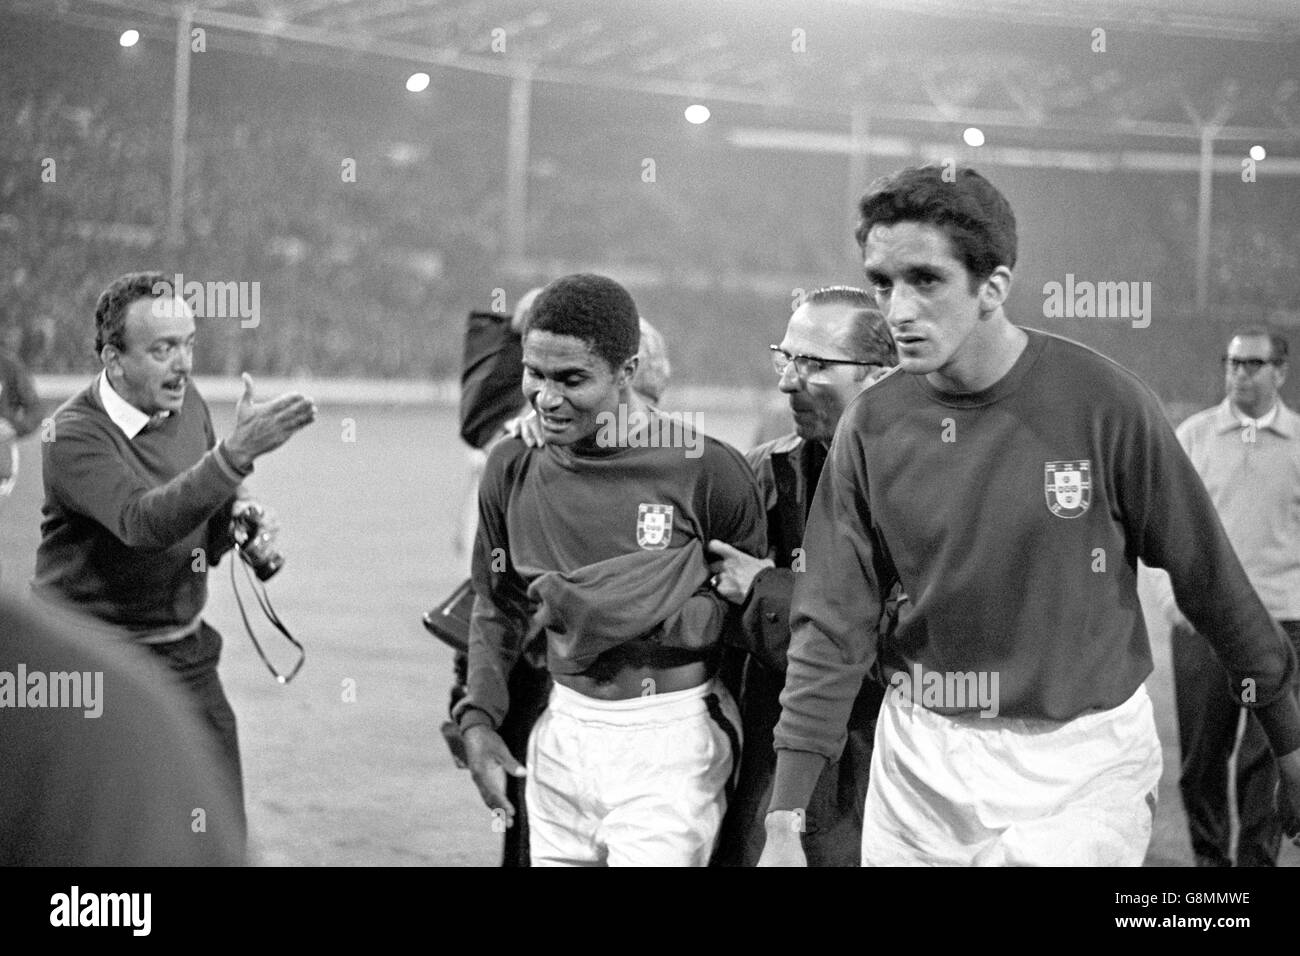 Fußball - Weltmeisterschaft England 1966 - Halbfinale - Portugal gegen England - Wembley-Stadion. Die Portugiesen Eusebio (l) und Jose Torres (r) stachen nach der Niederlage ihres Teams im Jahr 2-1 dejectedly vom Spielfeld Stockfoto